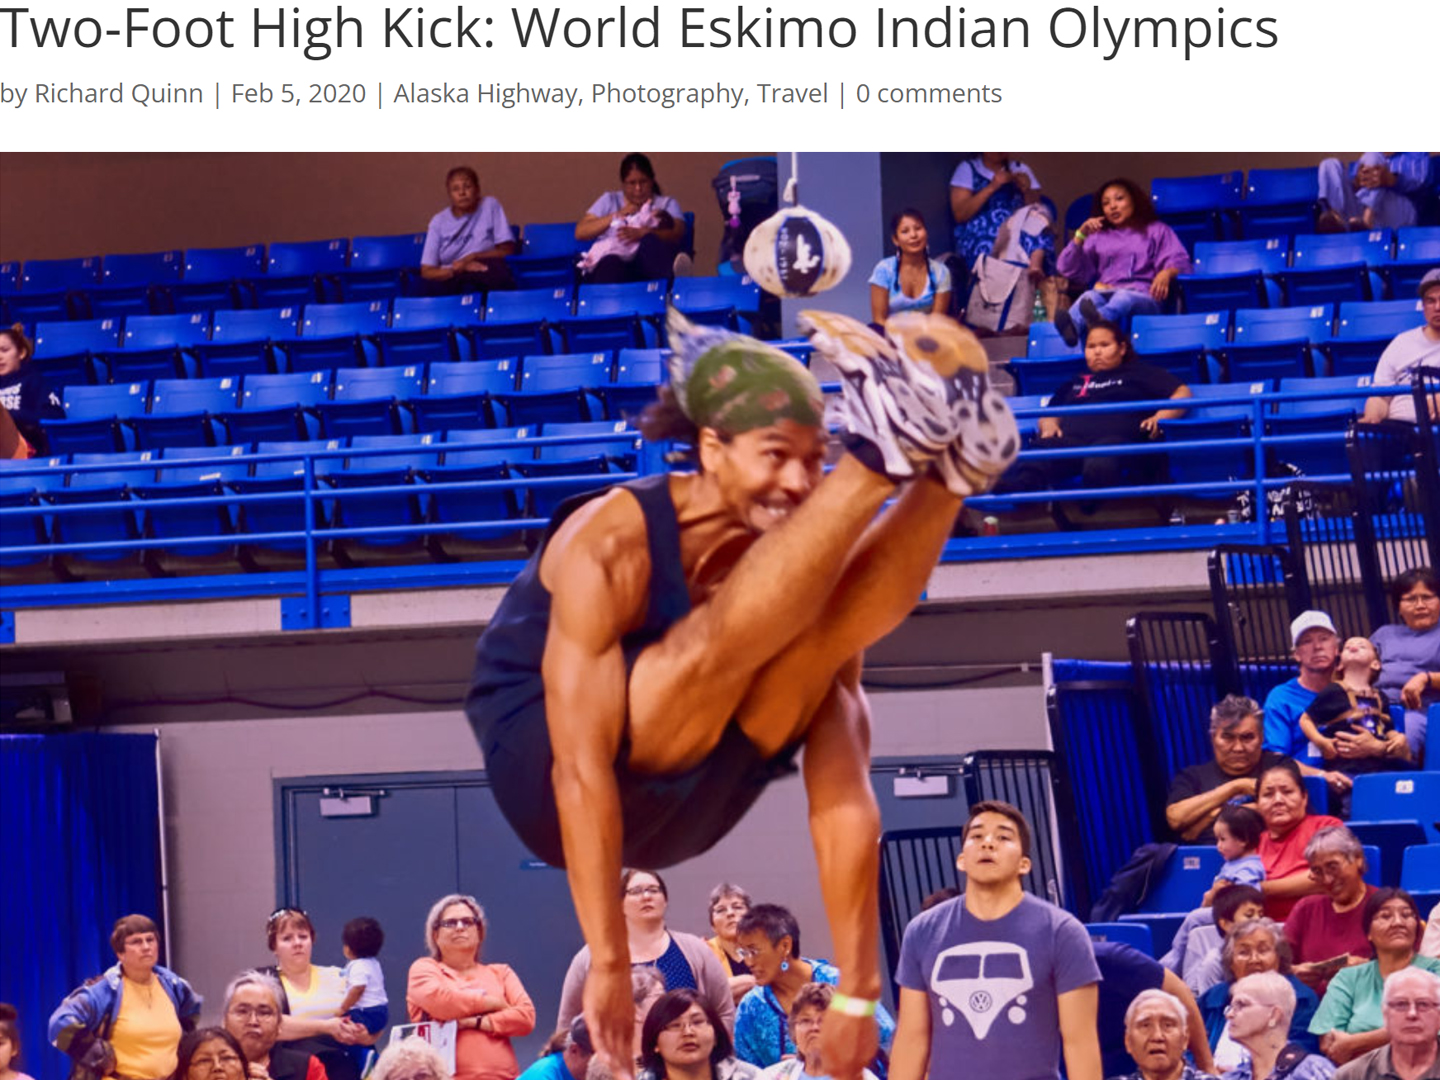 Indian kicks